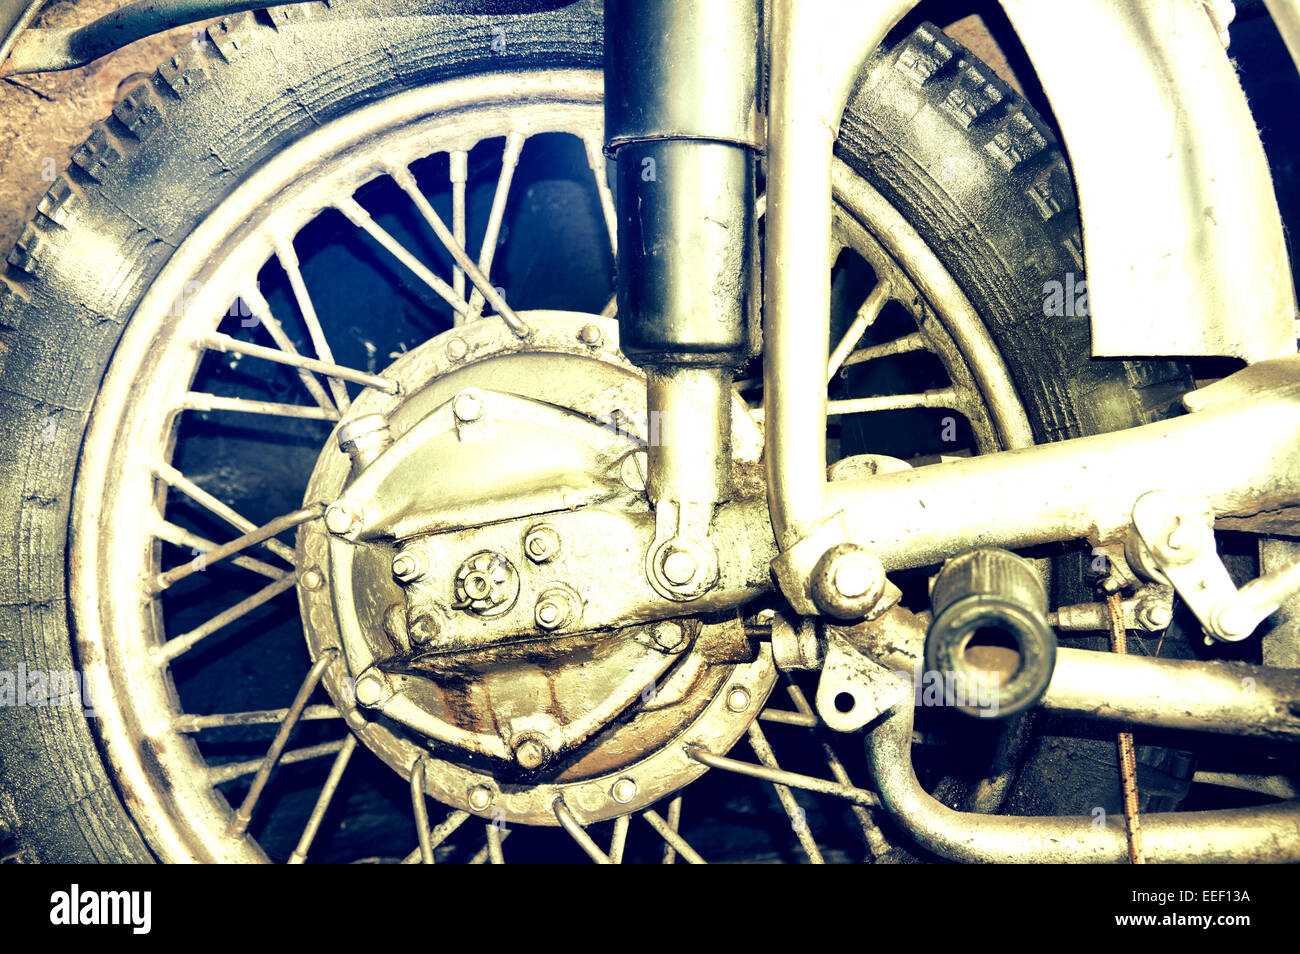 Image Transport. Pneu moto. Partie de l'ancienne moto. Pastel crémeux vintage photo Banque D'Images